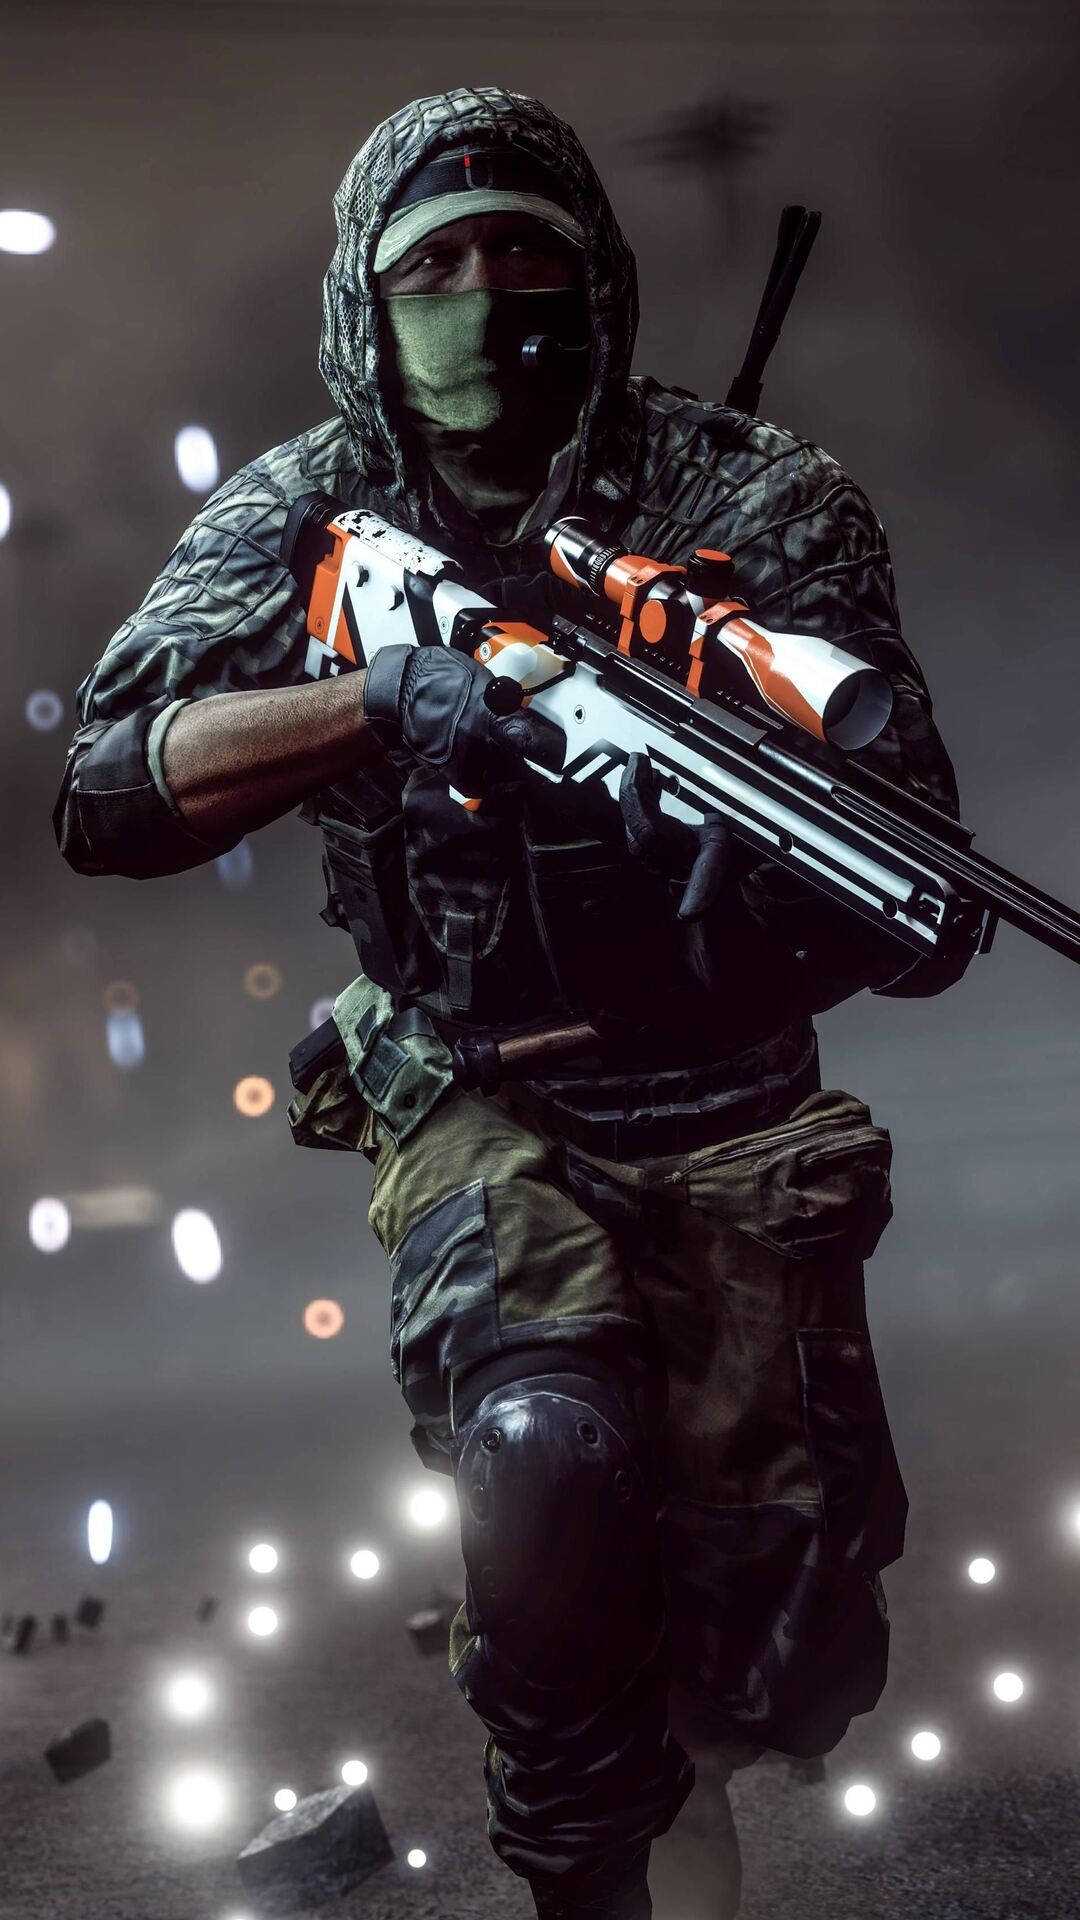 Running Sniper In Battlefield 4 Phone Wallpaper